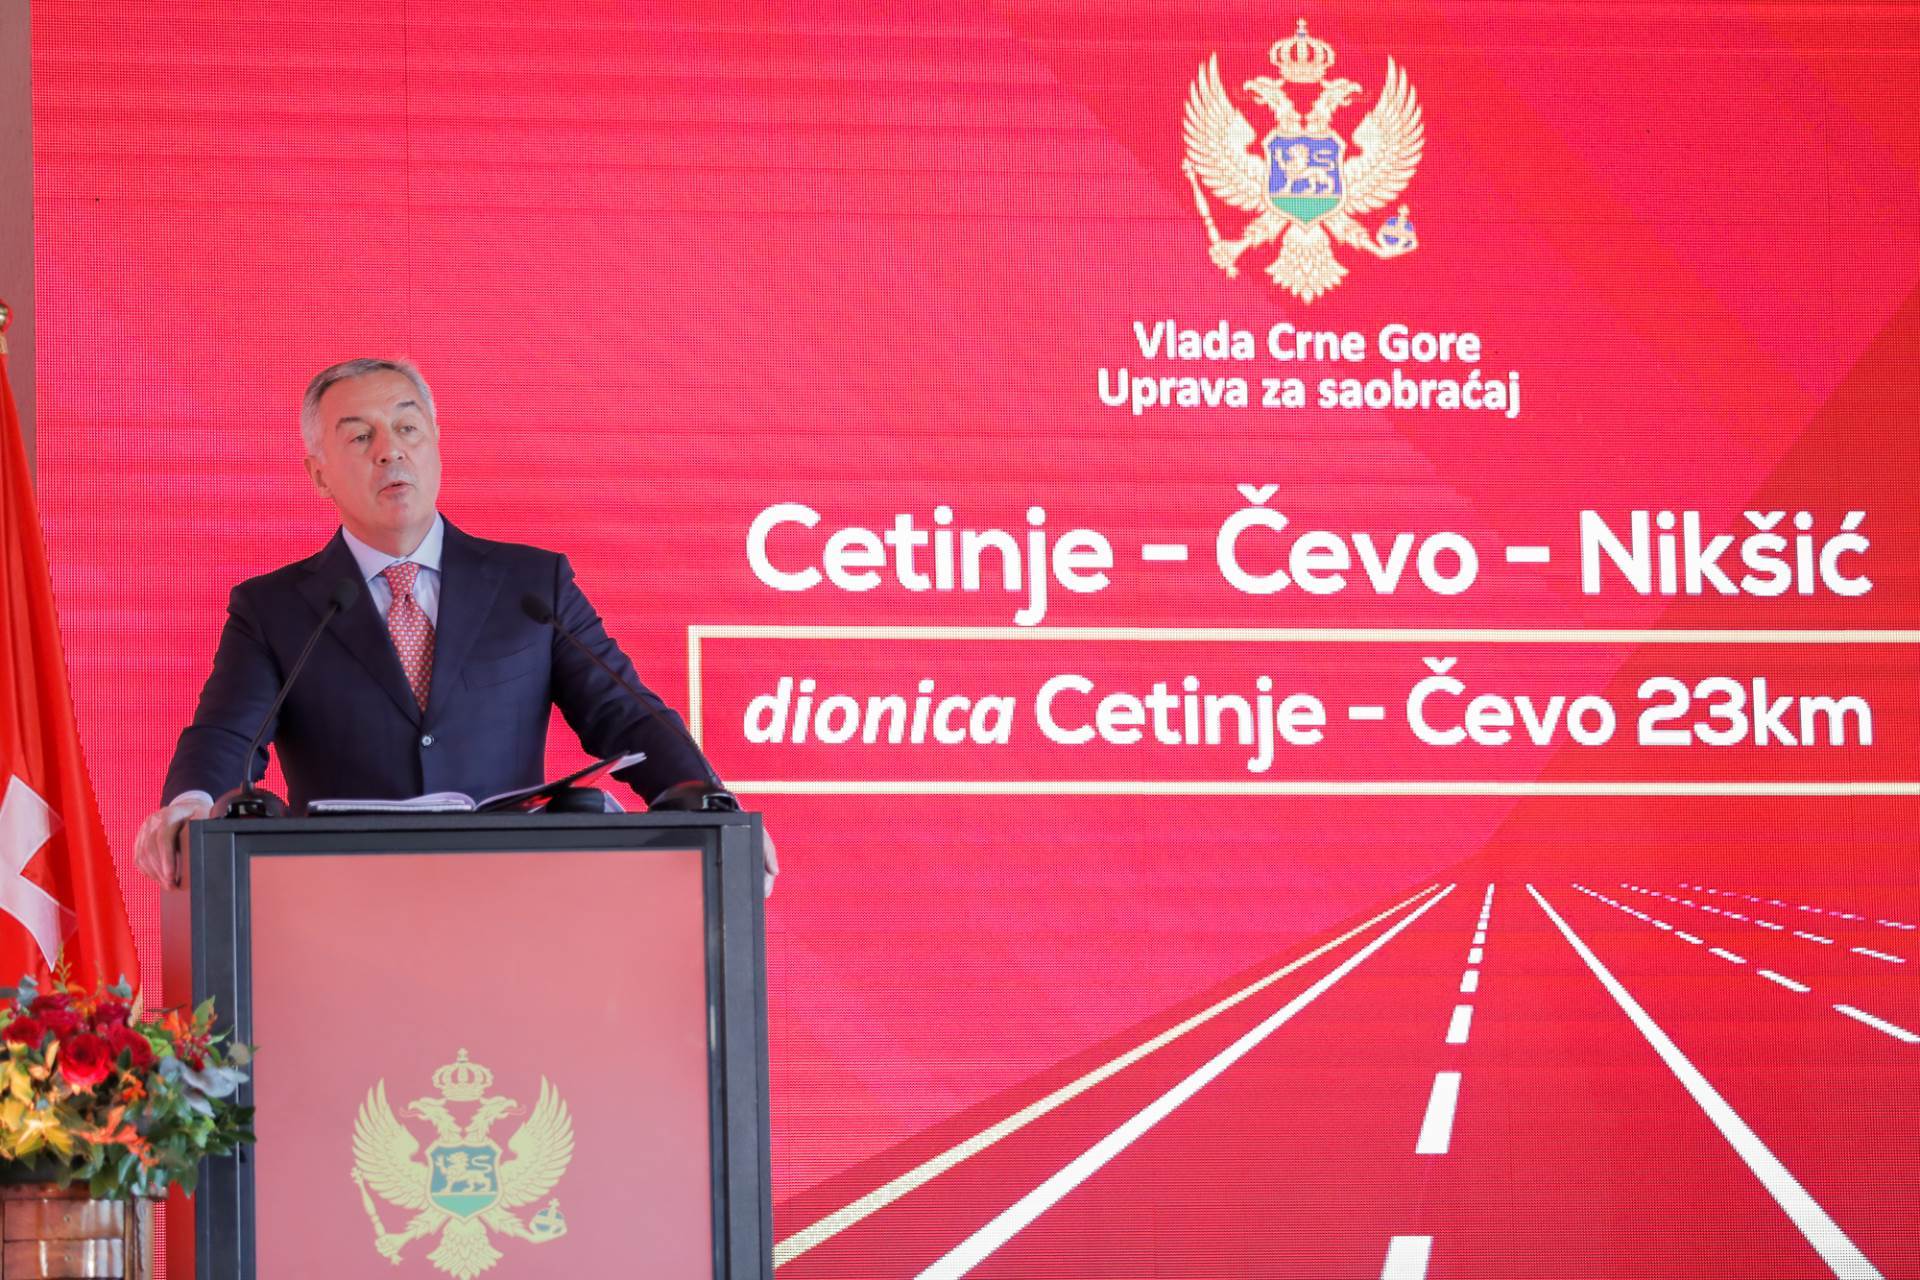  Đukanović: Put Cetinje-Čevo-Nikšić važna spona centra crnogorske državnosti i istorije 